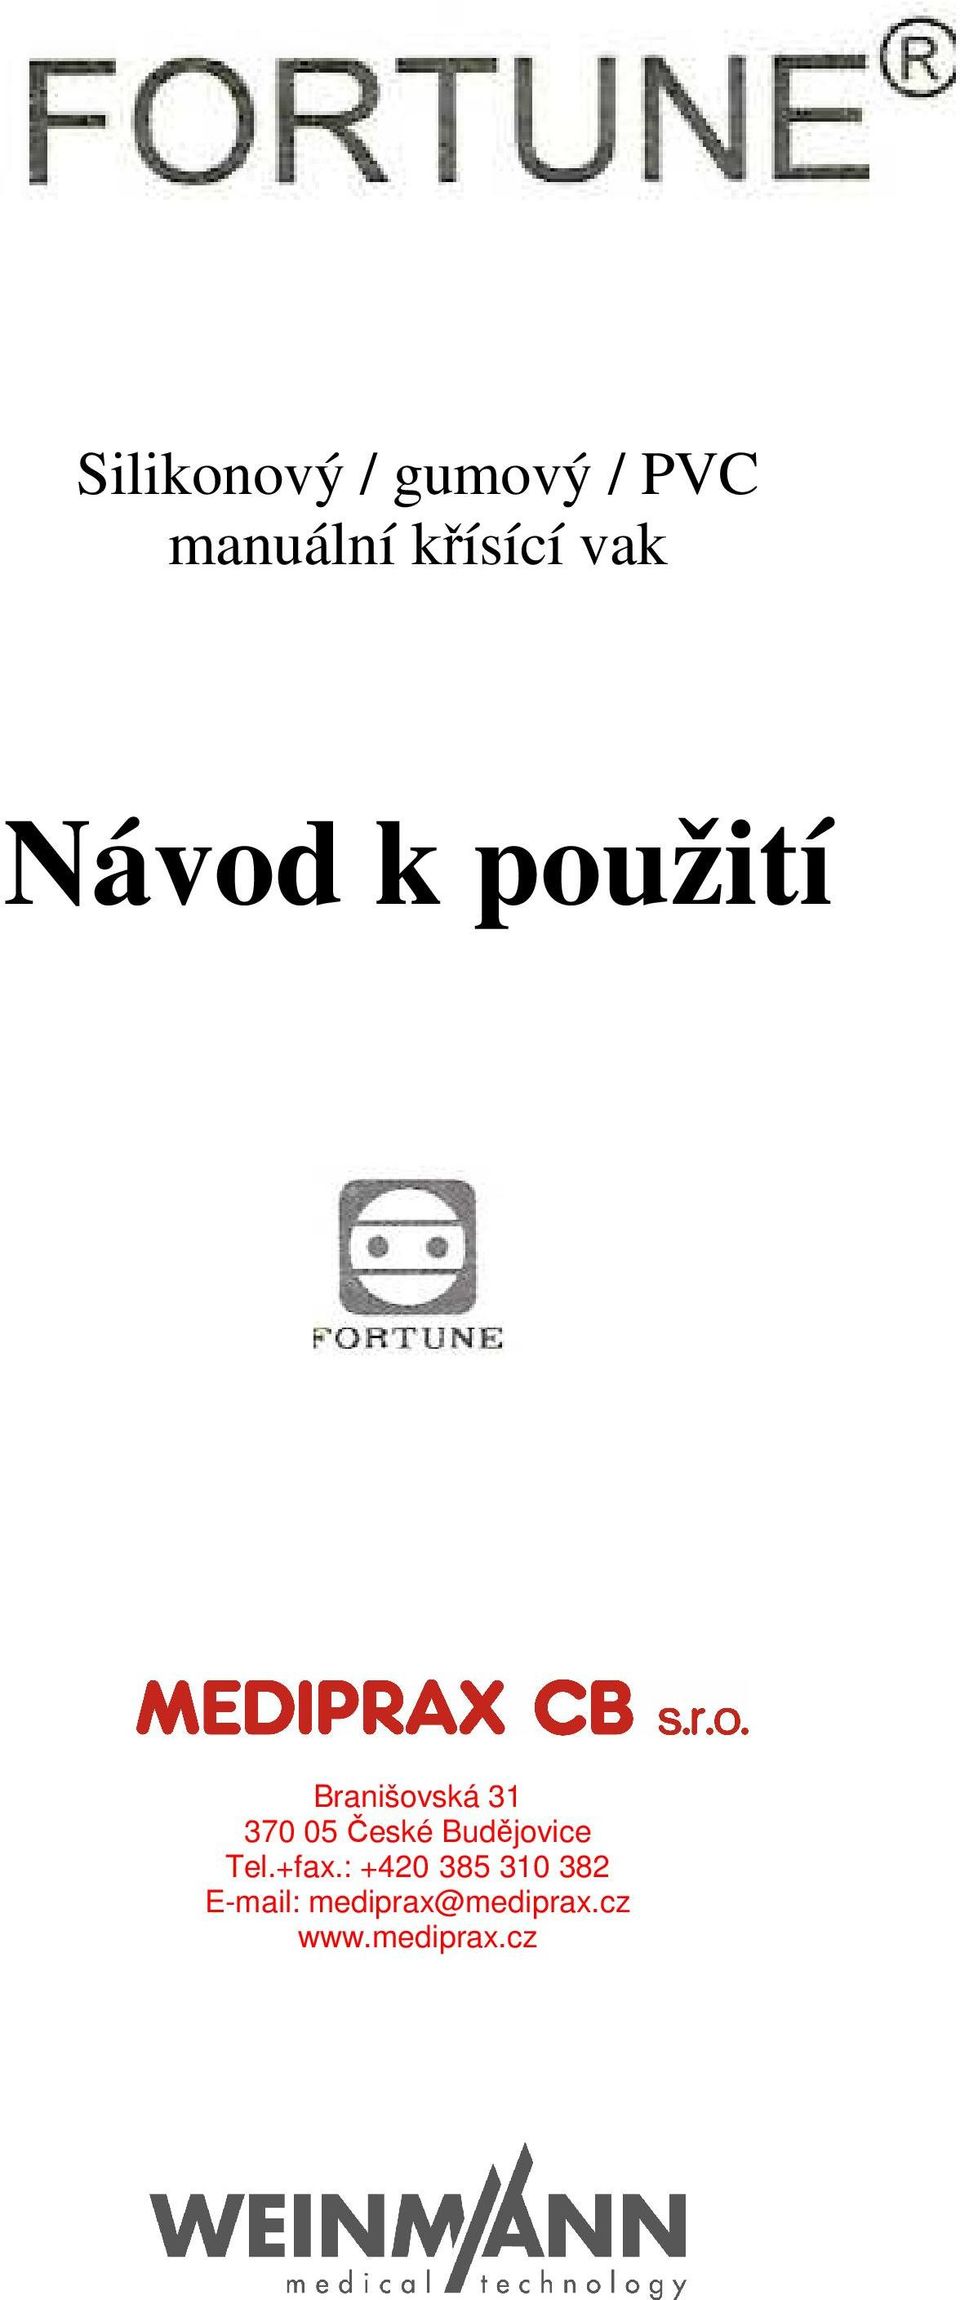 České Budějovice Tel.+fax.